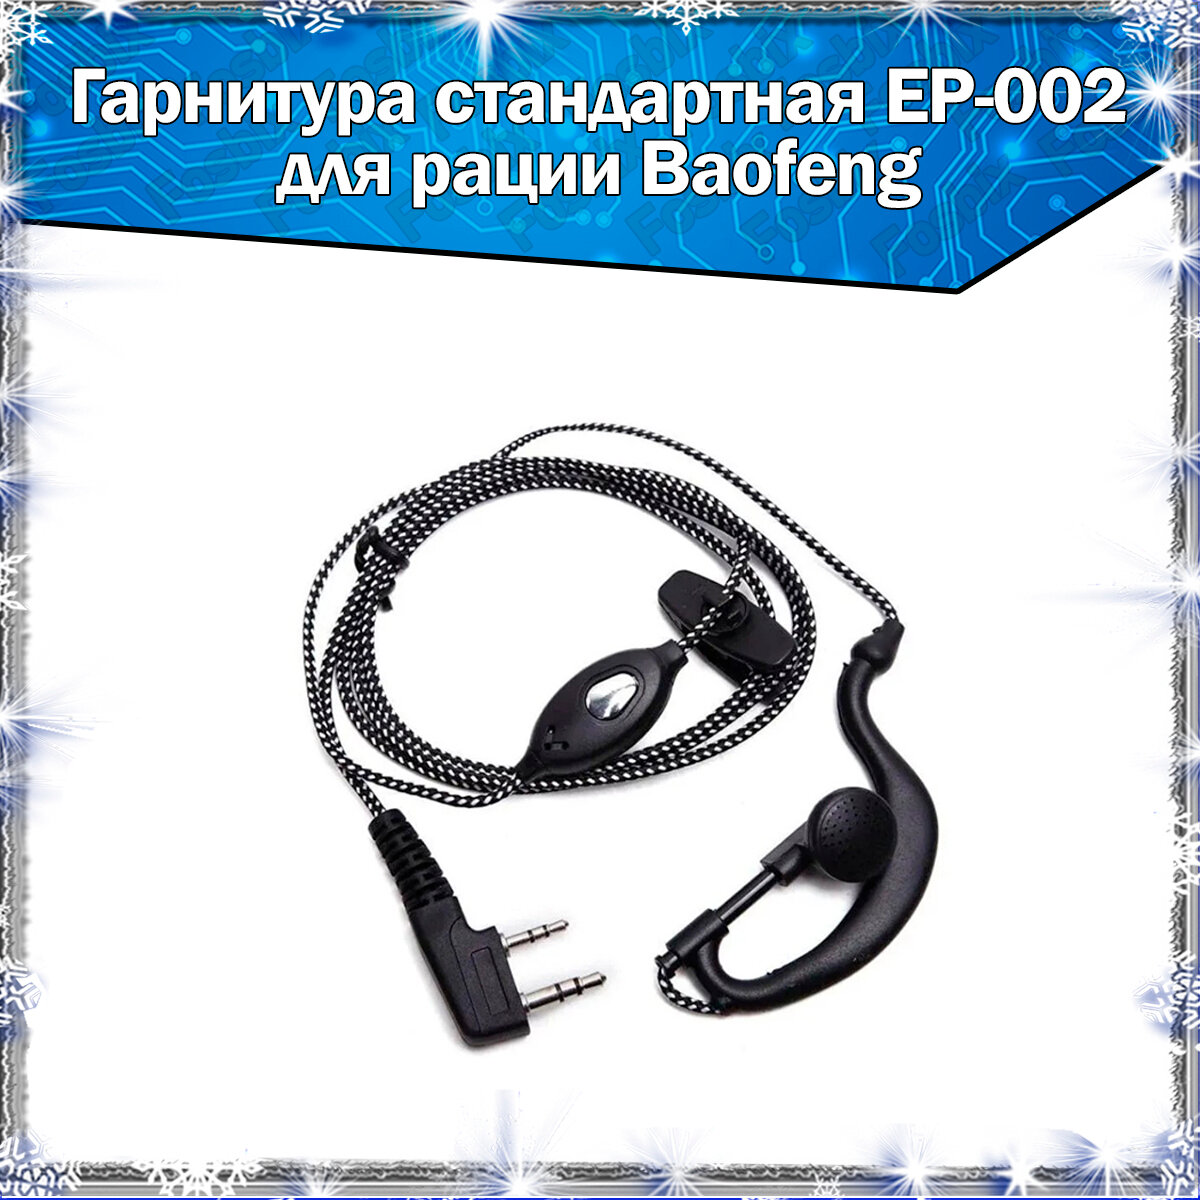 Гарнитура EP-002 с износостойкой оплёткой для раций Baofeng